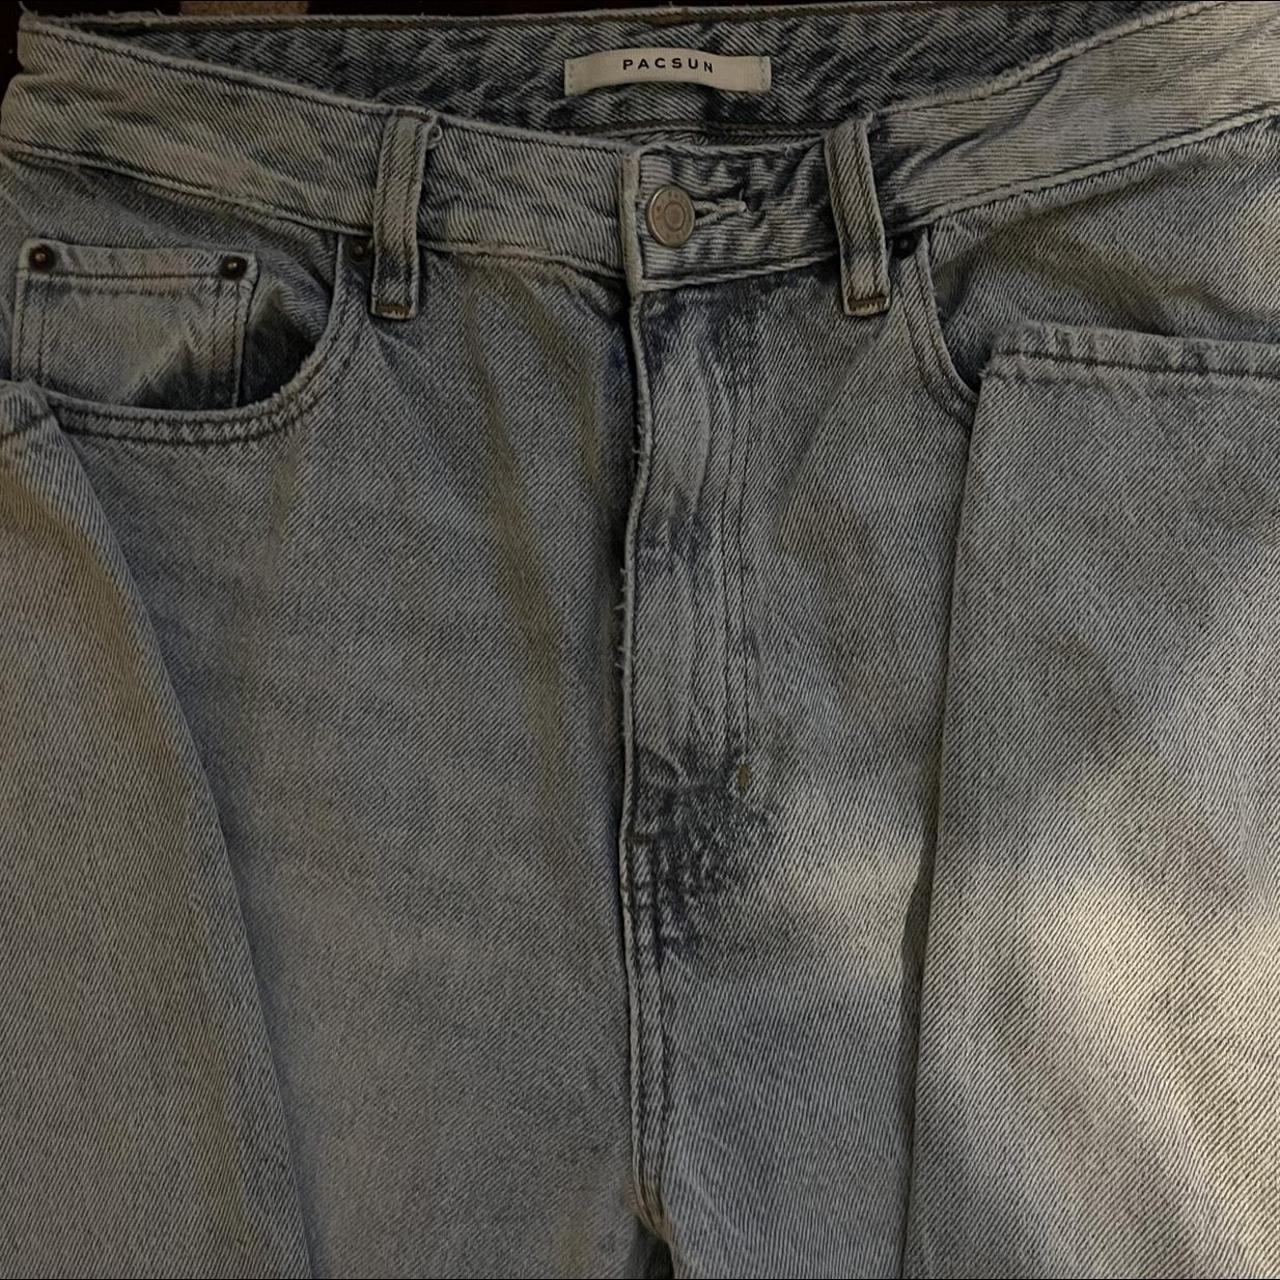 pacsun high rise mom jeans #pacsun #vintage #2000s - Depop